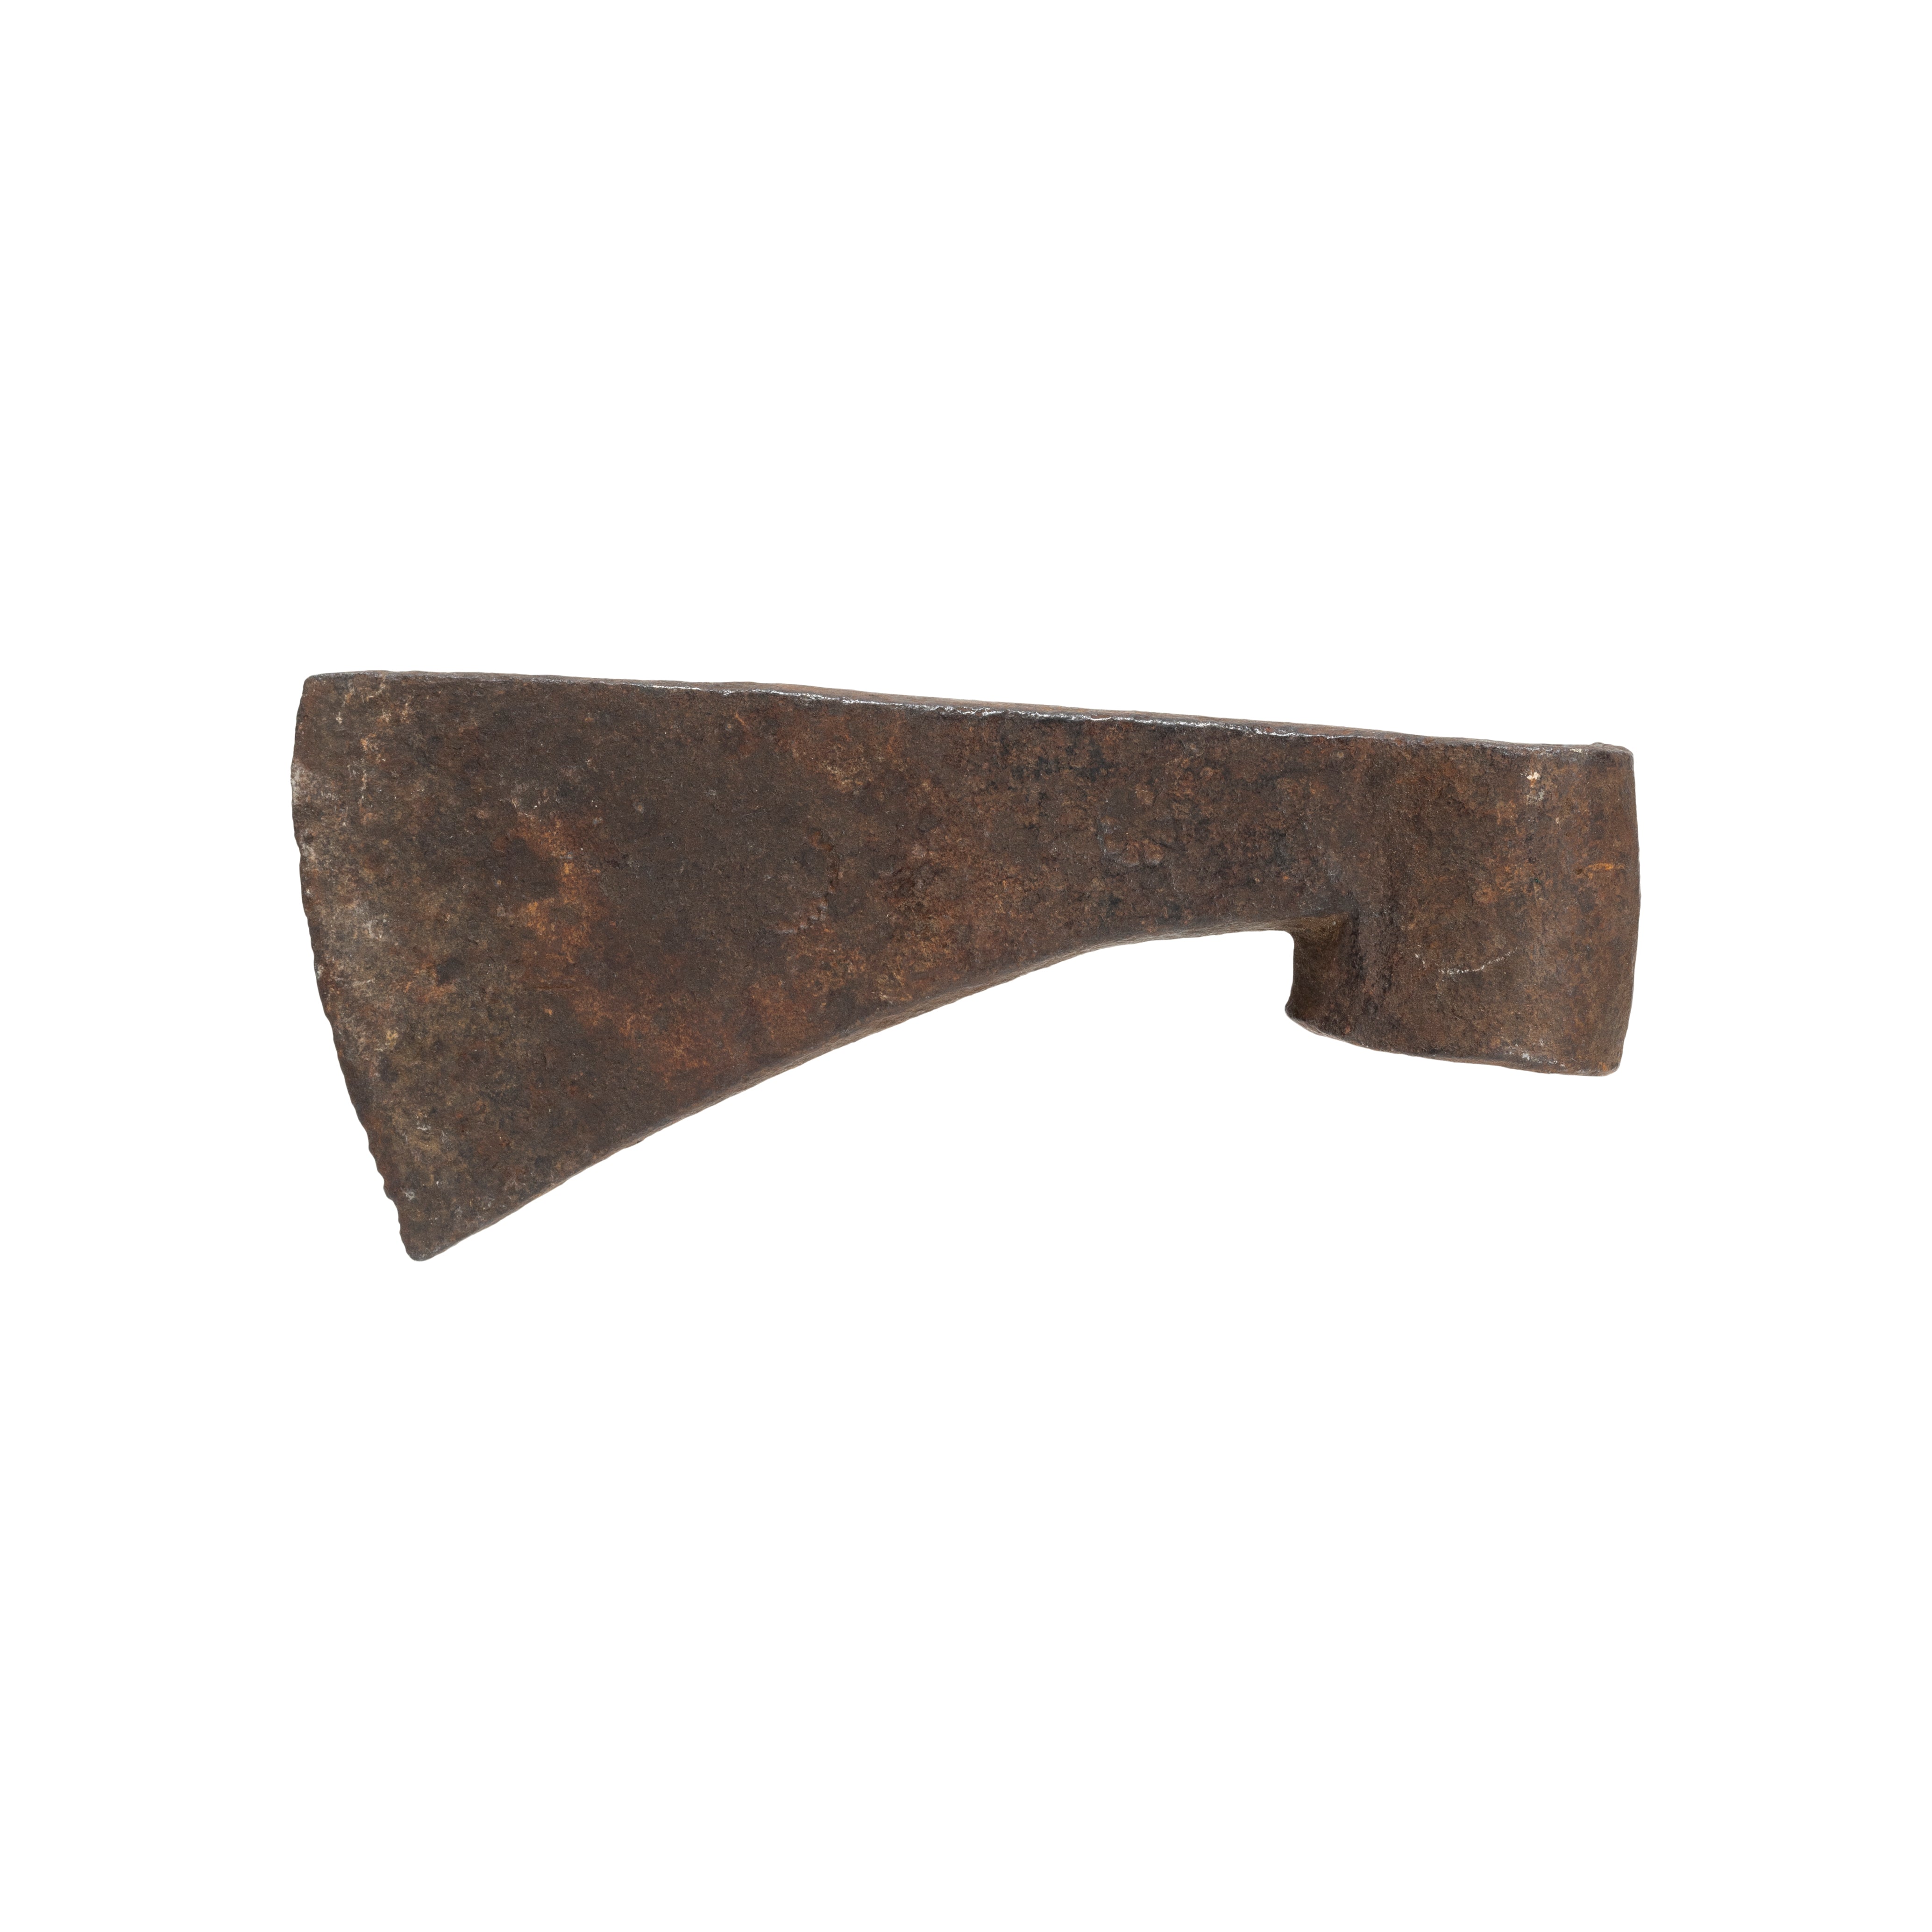 Blacksmith Forged Axe Head Pair